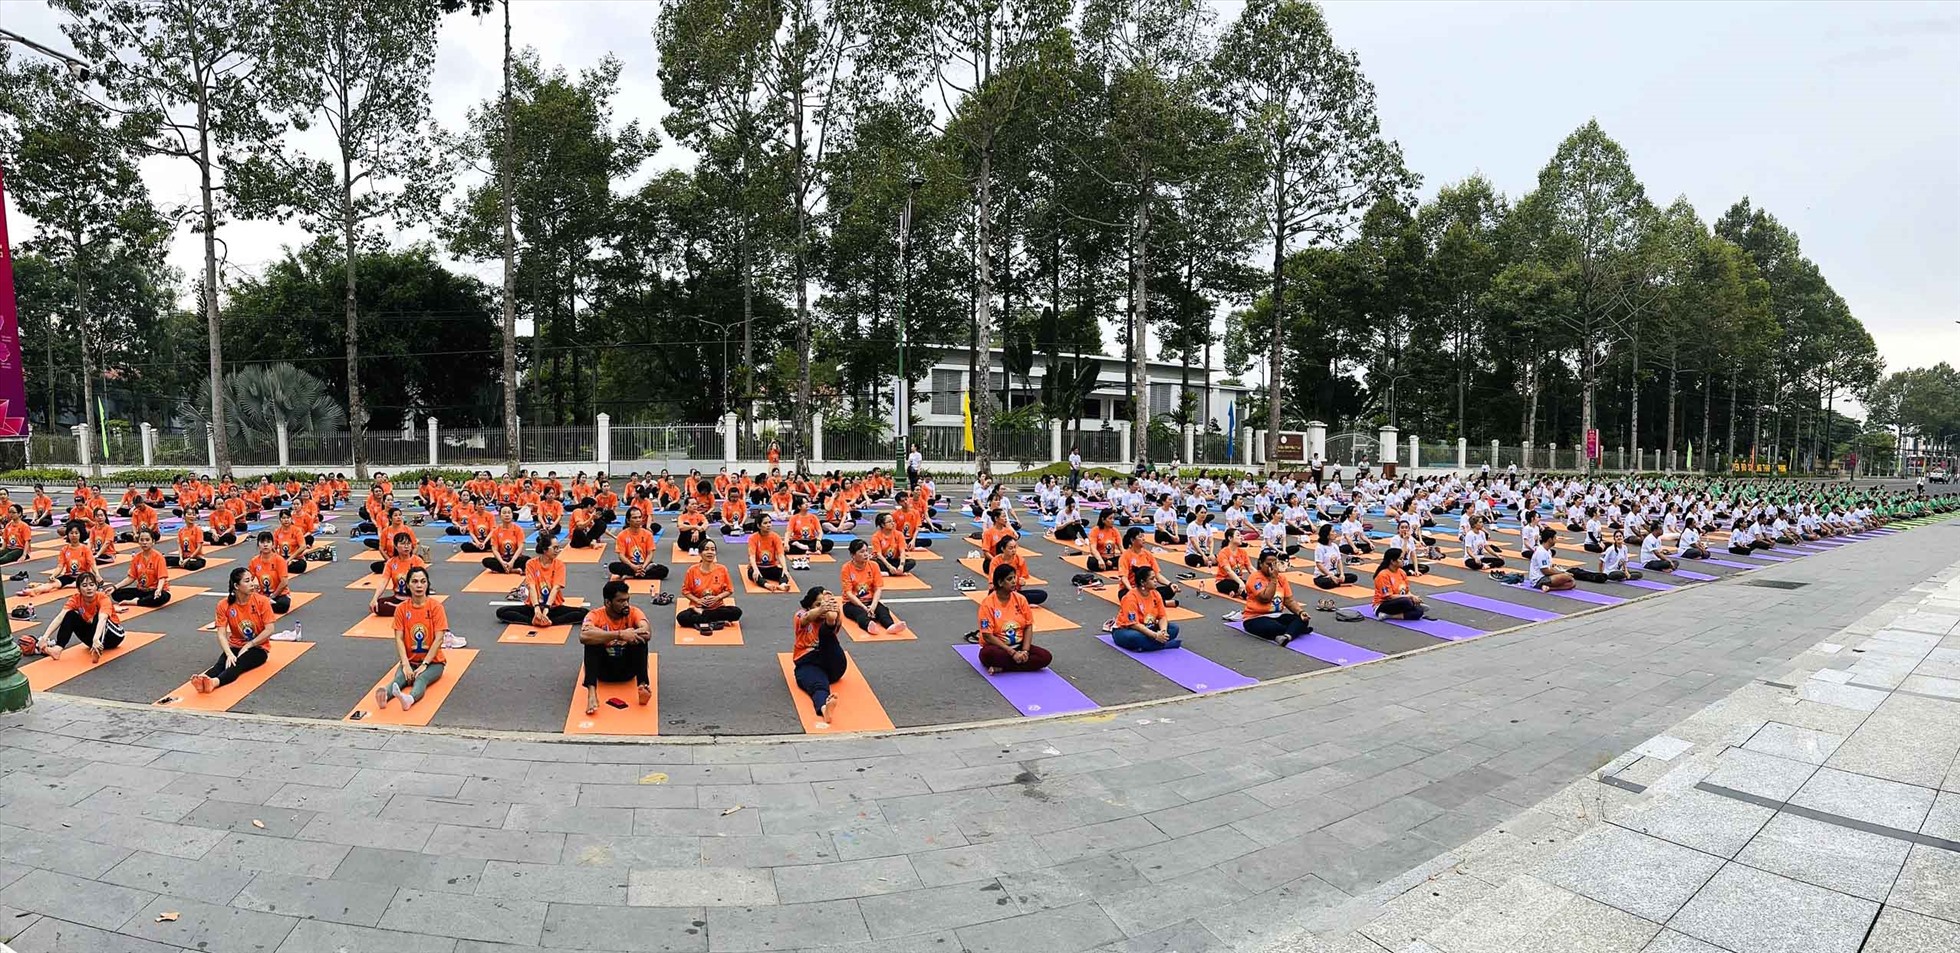 Quang cảnh 500 người tham gia đồng diễn tại sự kiện Ngày Quốc têa Yoga lần thứ 9 tại Đồng Tháp. Ảnh: Ban tổ chức cung cấp